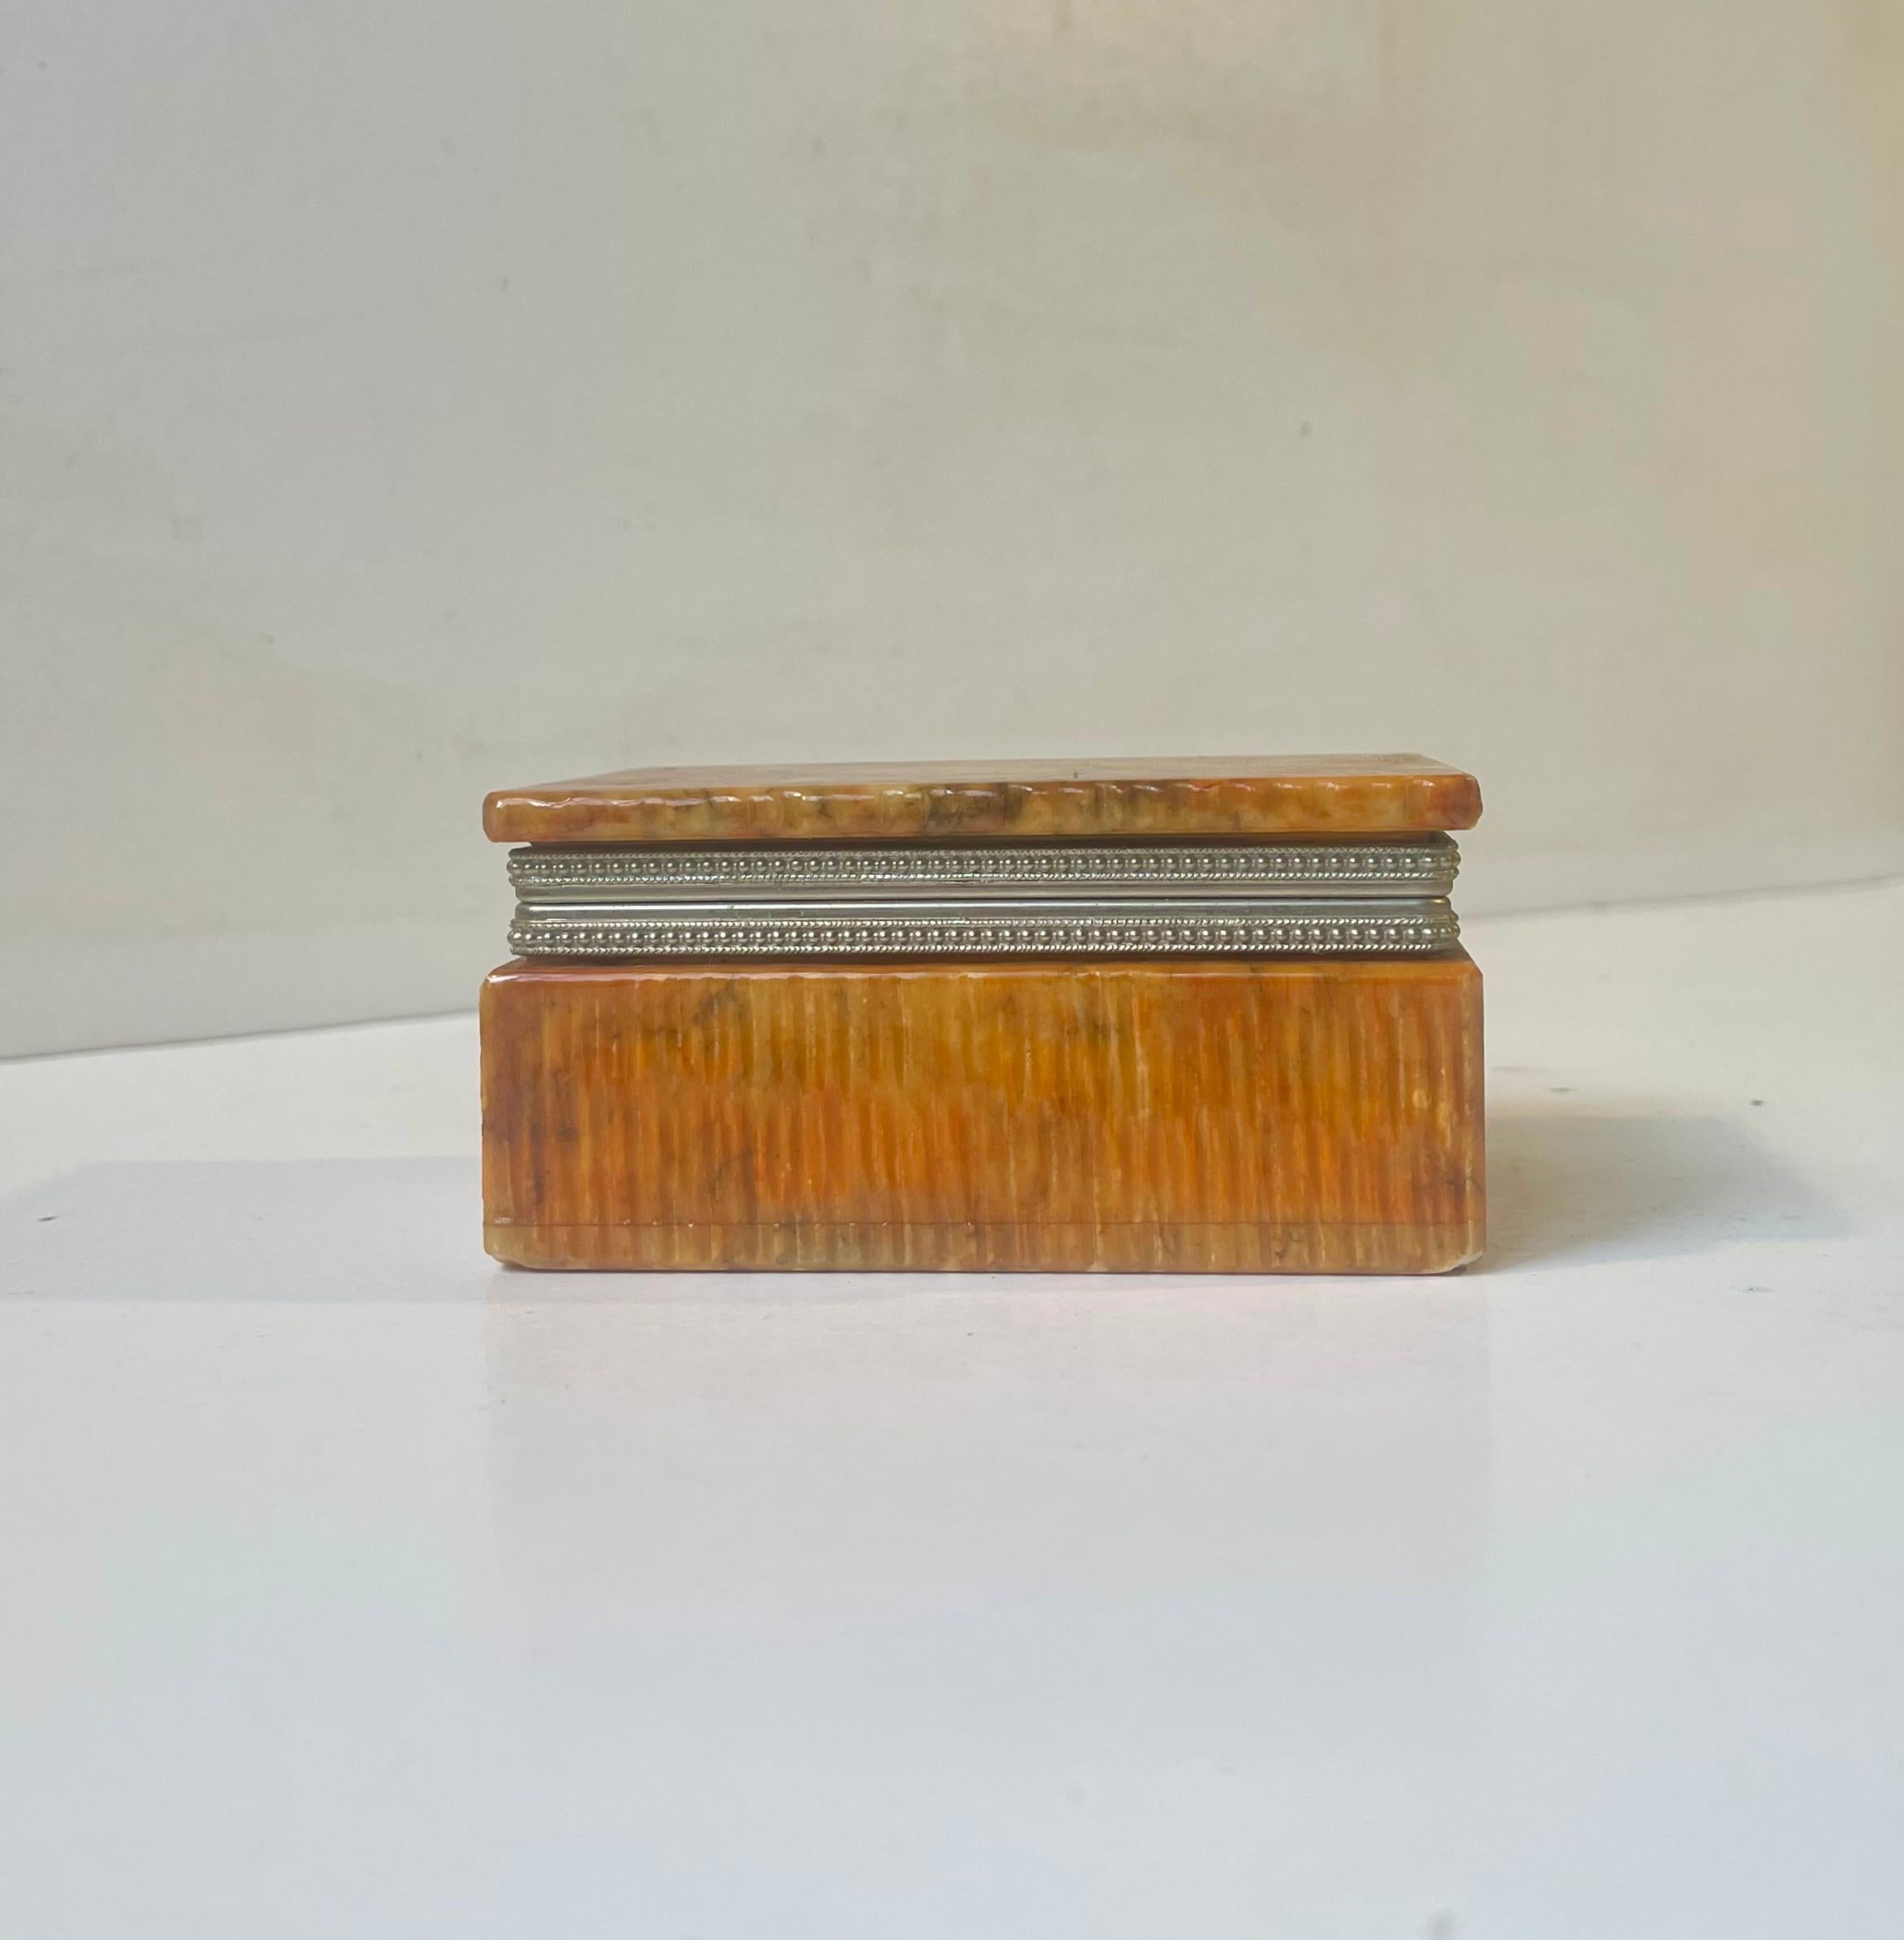 Boîte décorative en pierre d'albâtre orange naturelle pour bibelots, cigares, bijoux, vanités ou cigarettes. Fabriqué à la main en Italie dans les années 1970 par Romano Bianchi. Dimensions : 11x8x5 cm.

